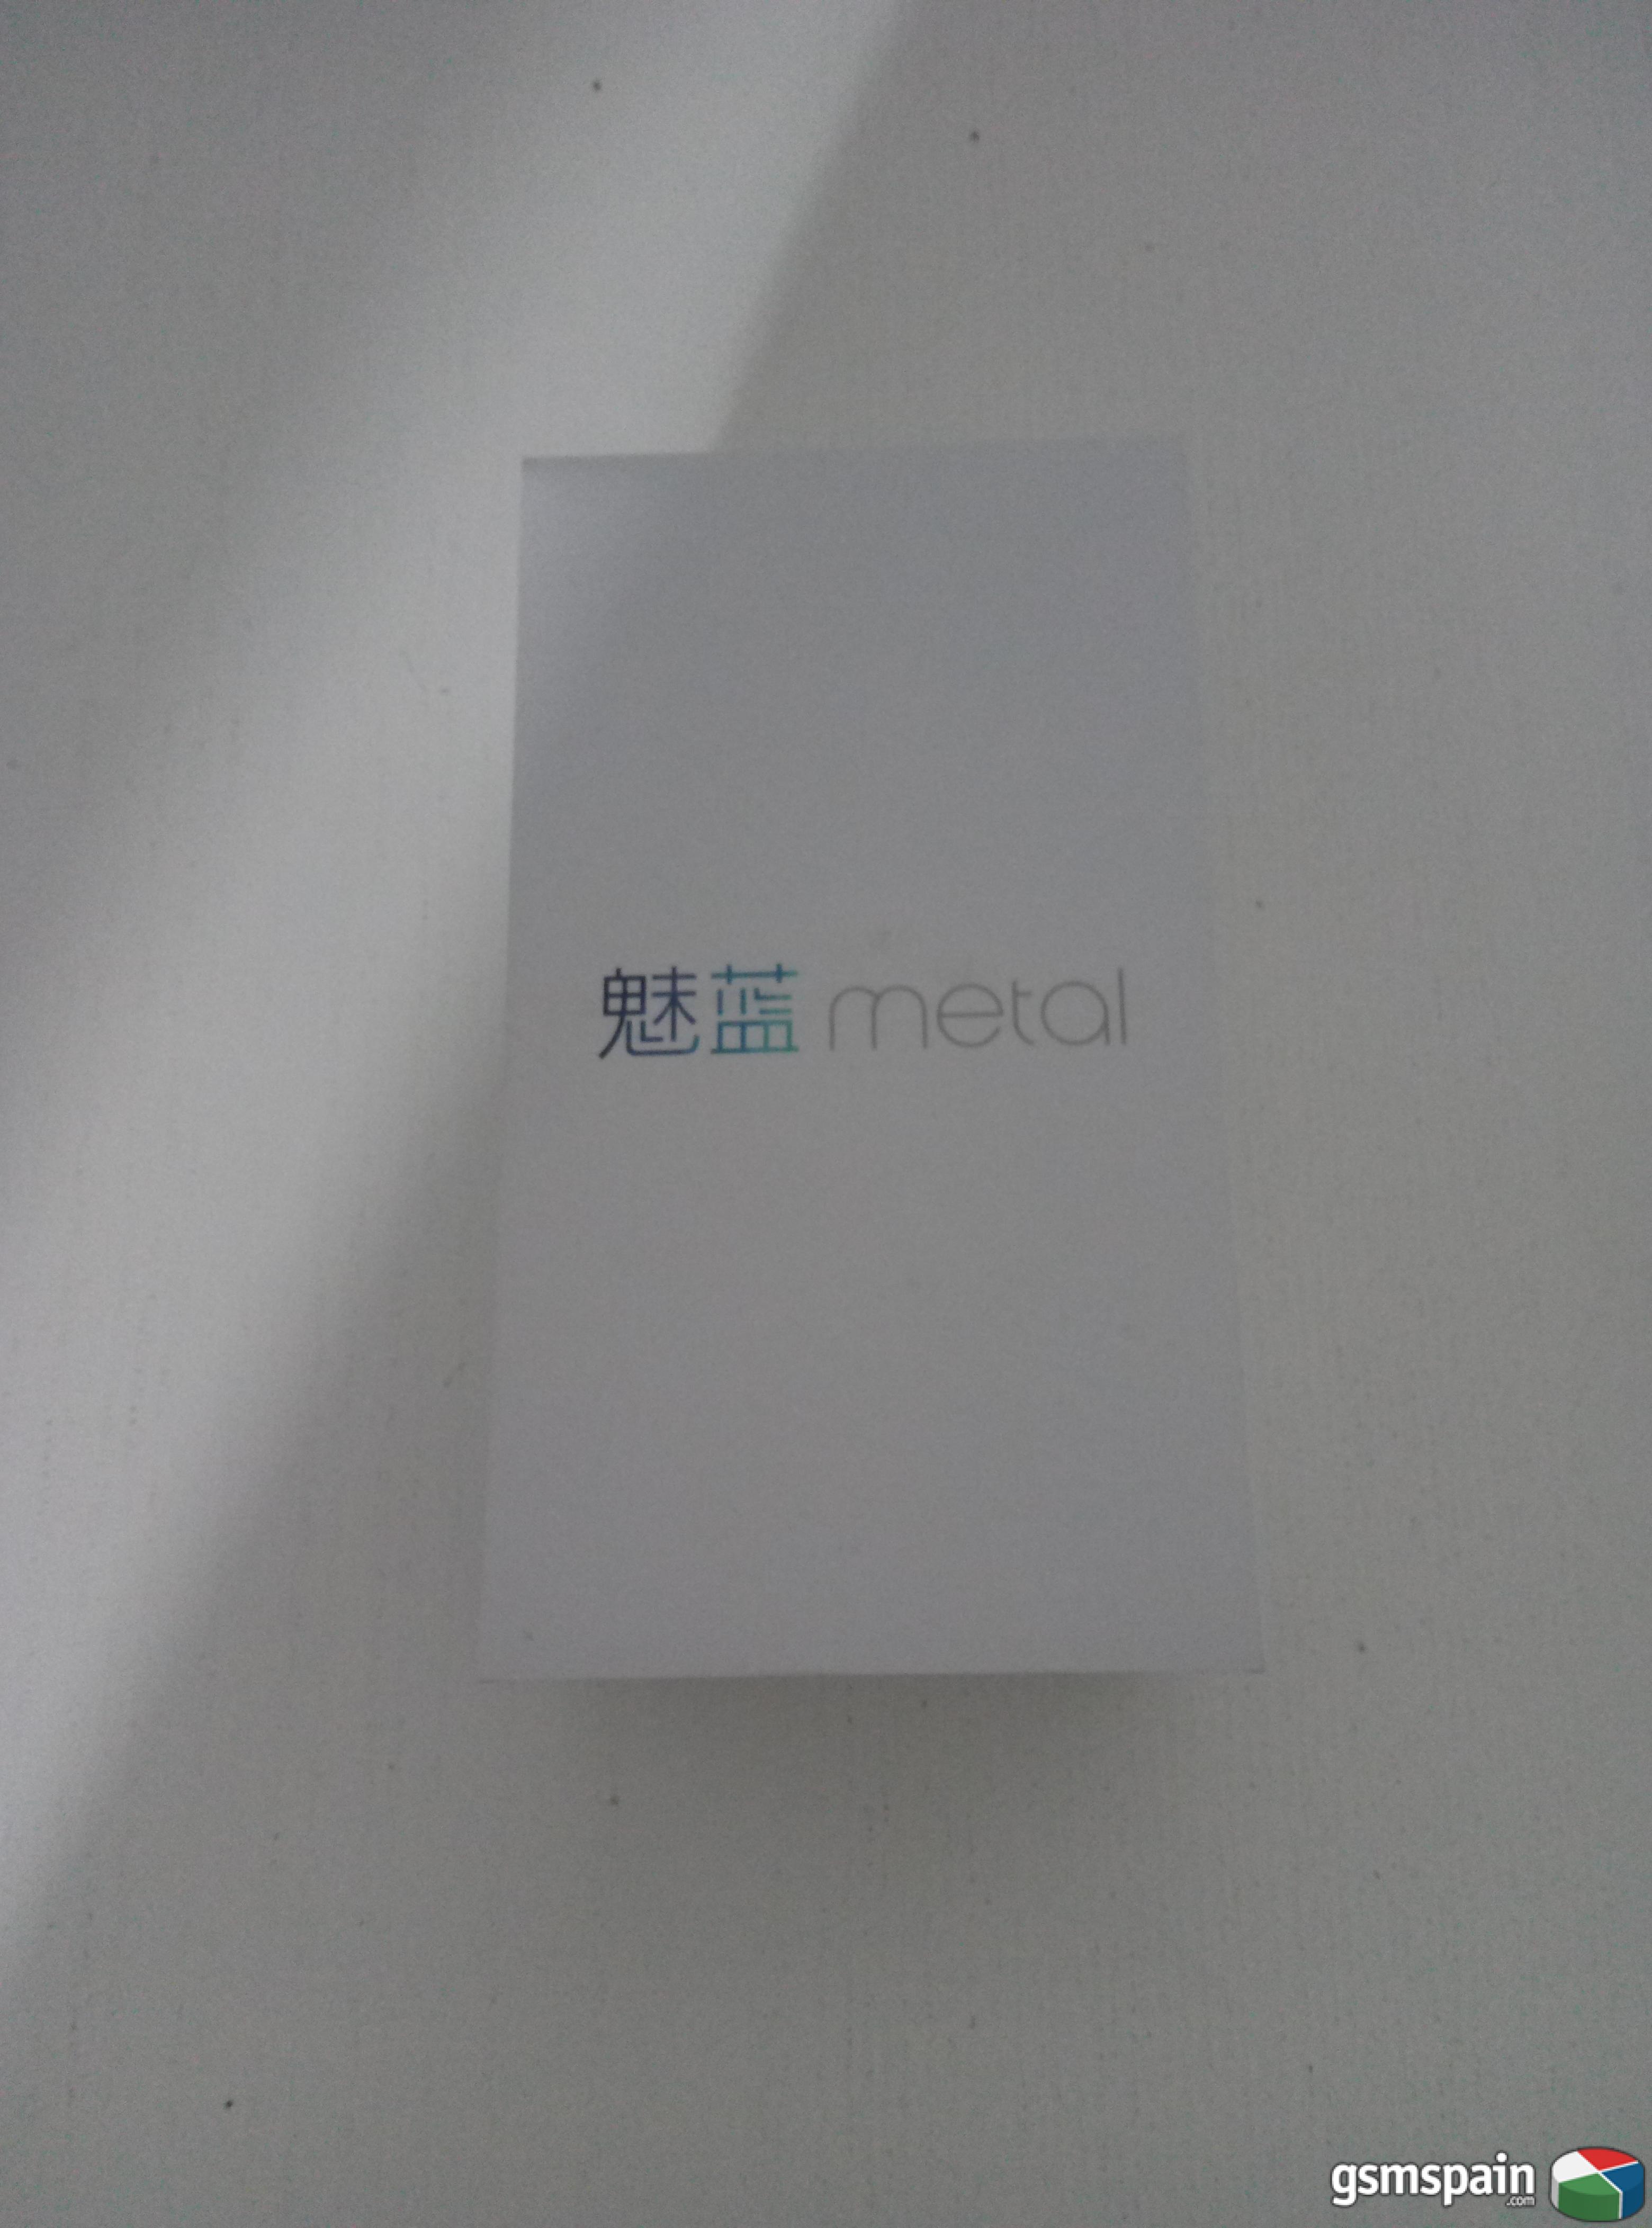 [VENDO] *********Meizu Metal 16gb -130*********